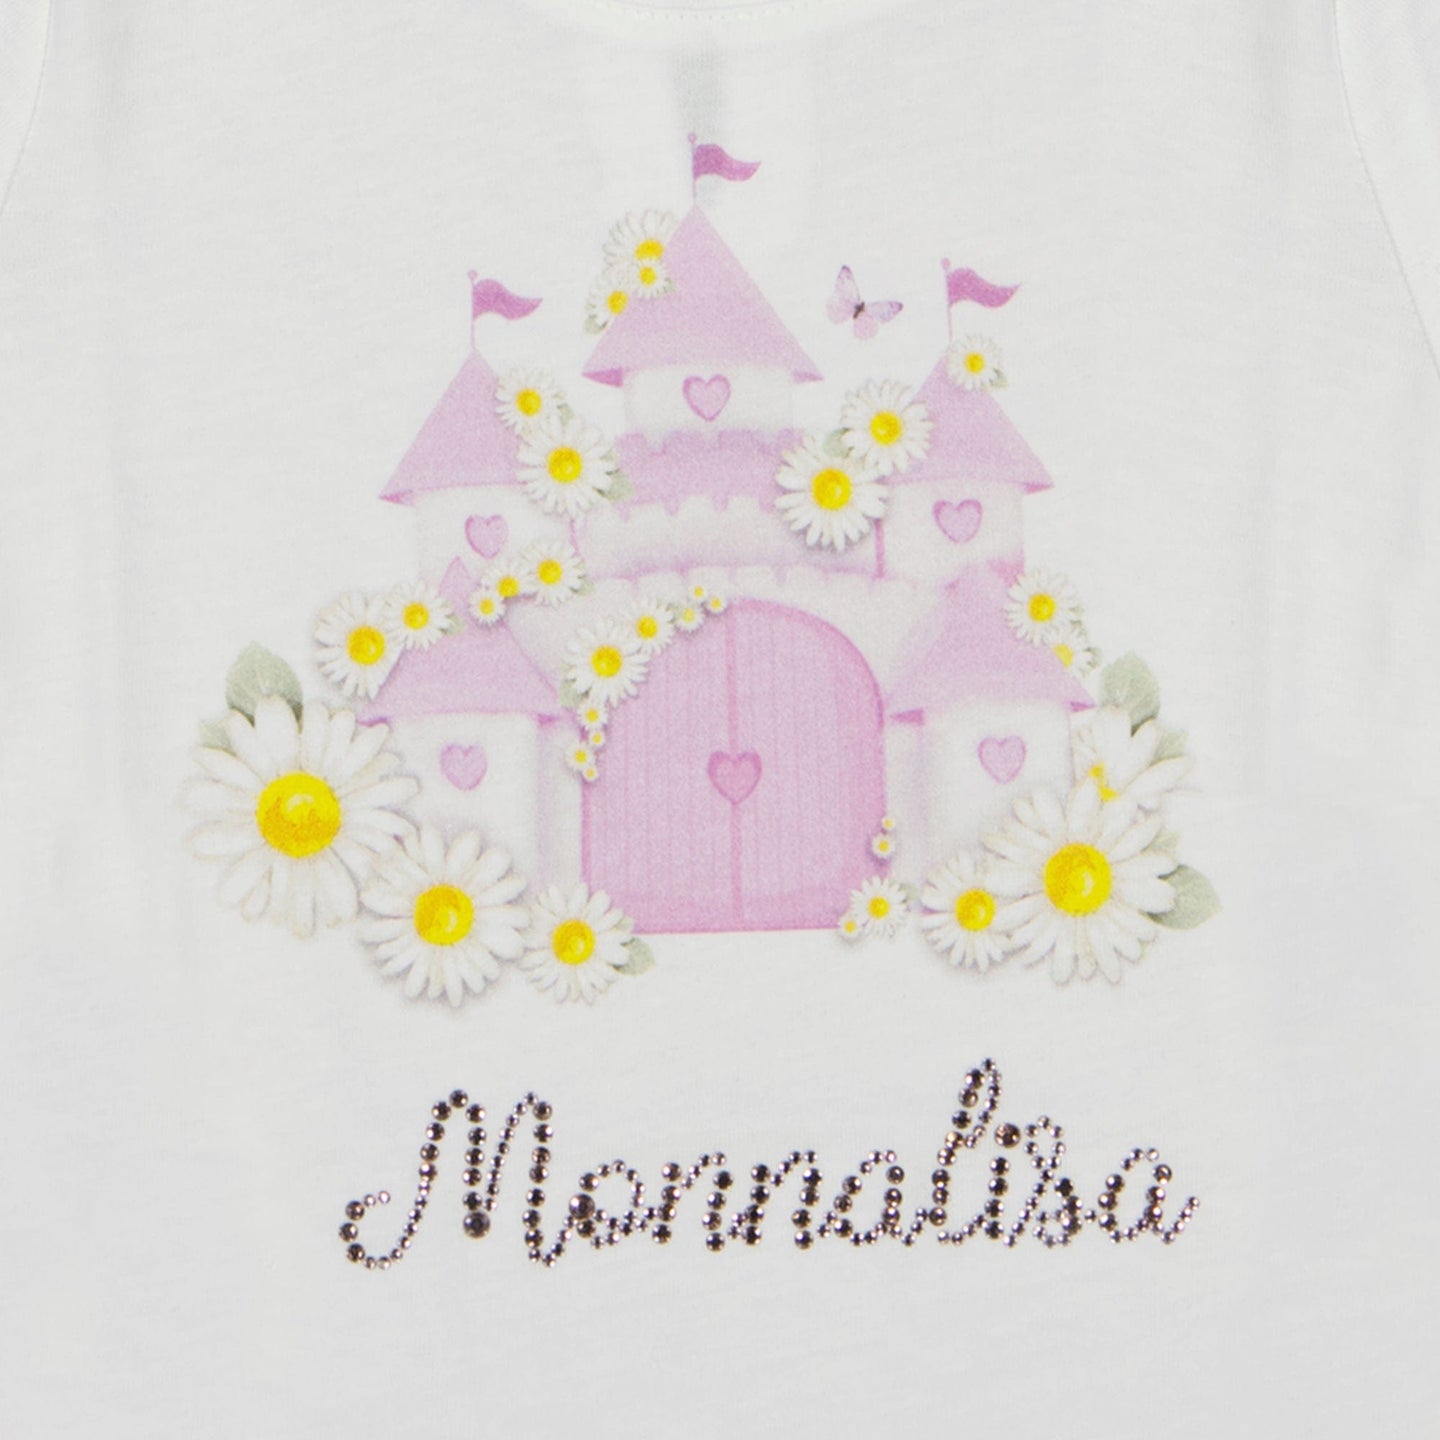 MonnaLisa Baby T-Shirt Wit 3 mnd